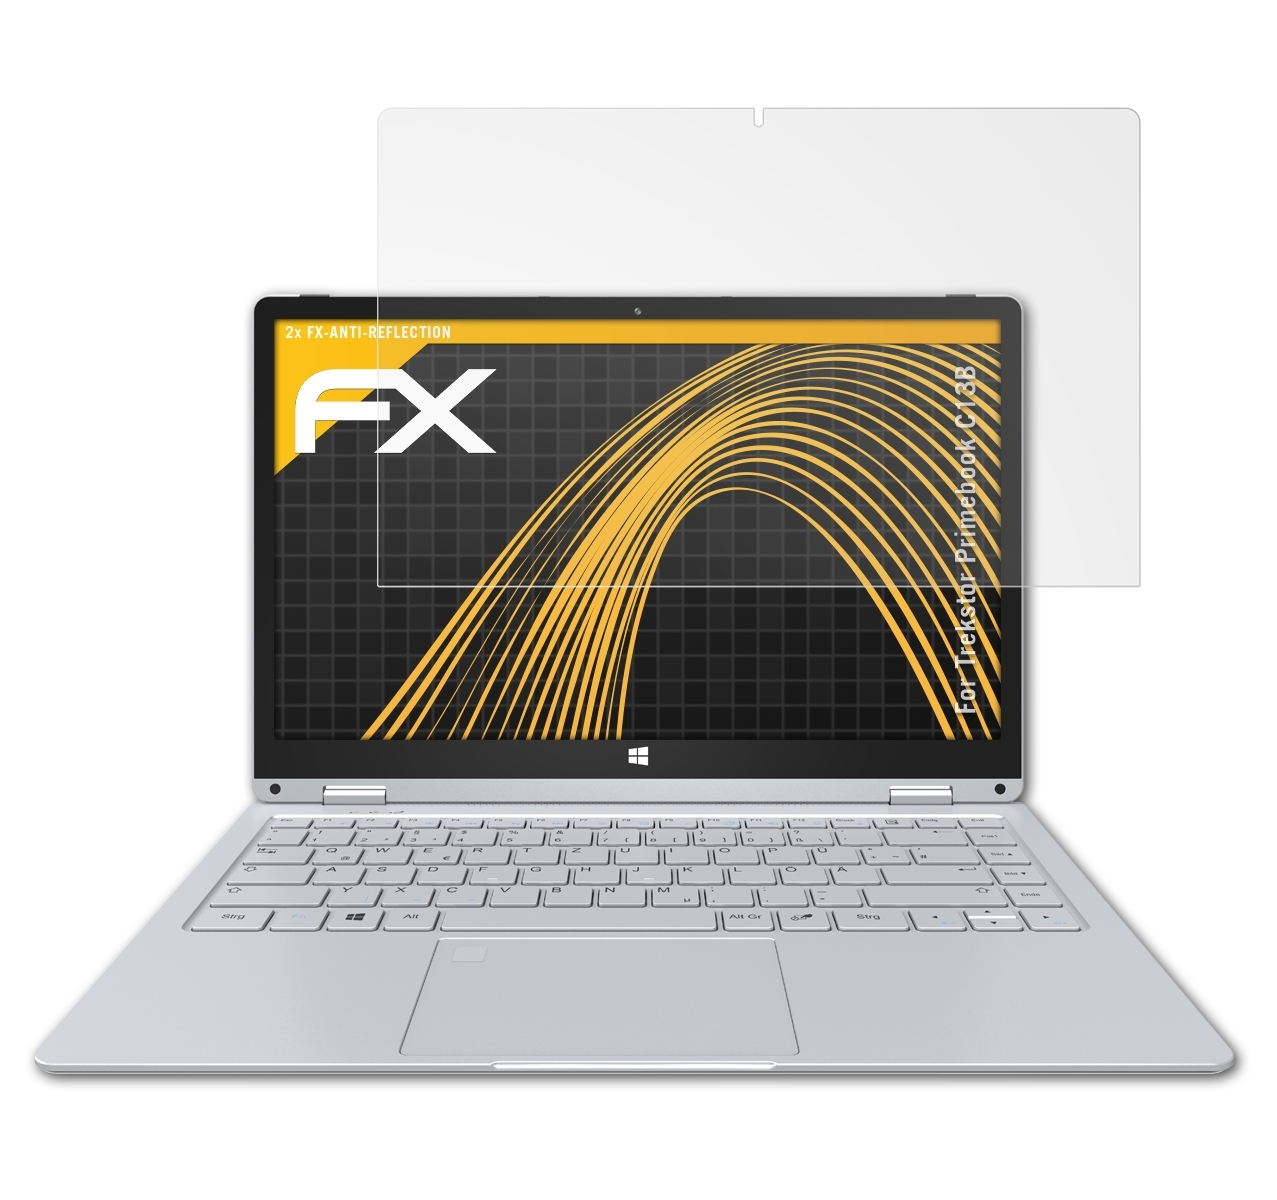 ATFOLIX 2x FX-Antireflex Displayschutz(für Primebook C13B) Trekstor